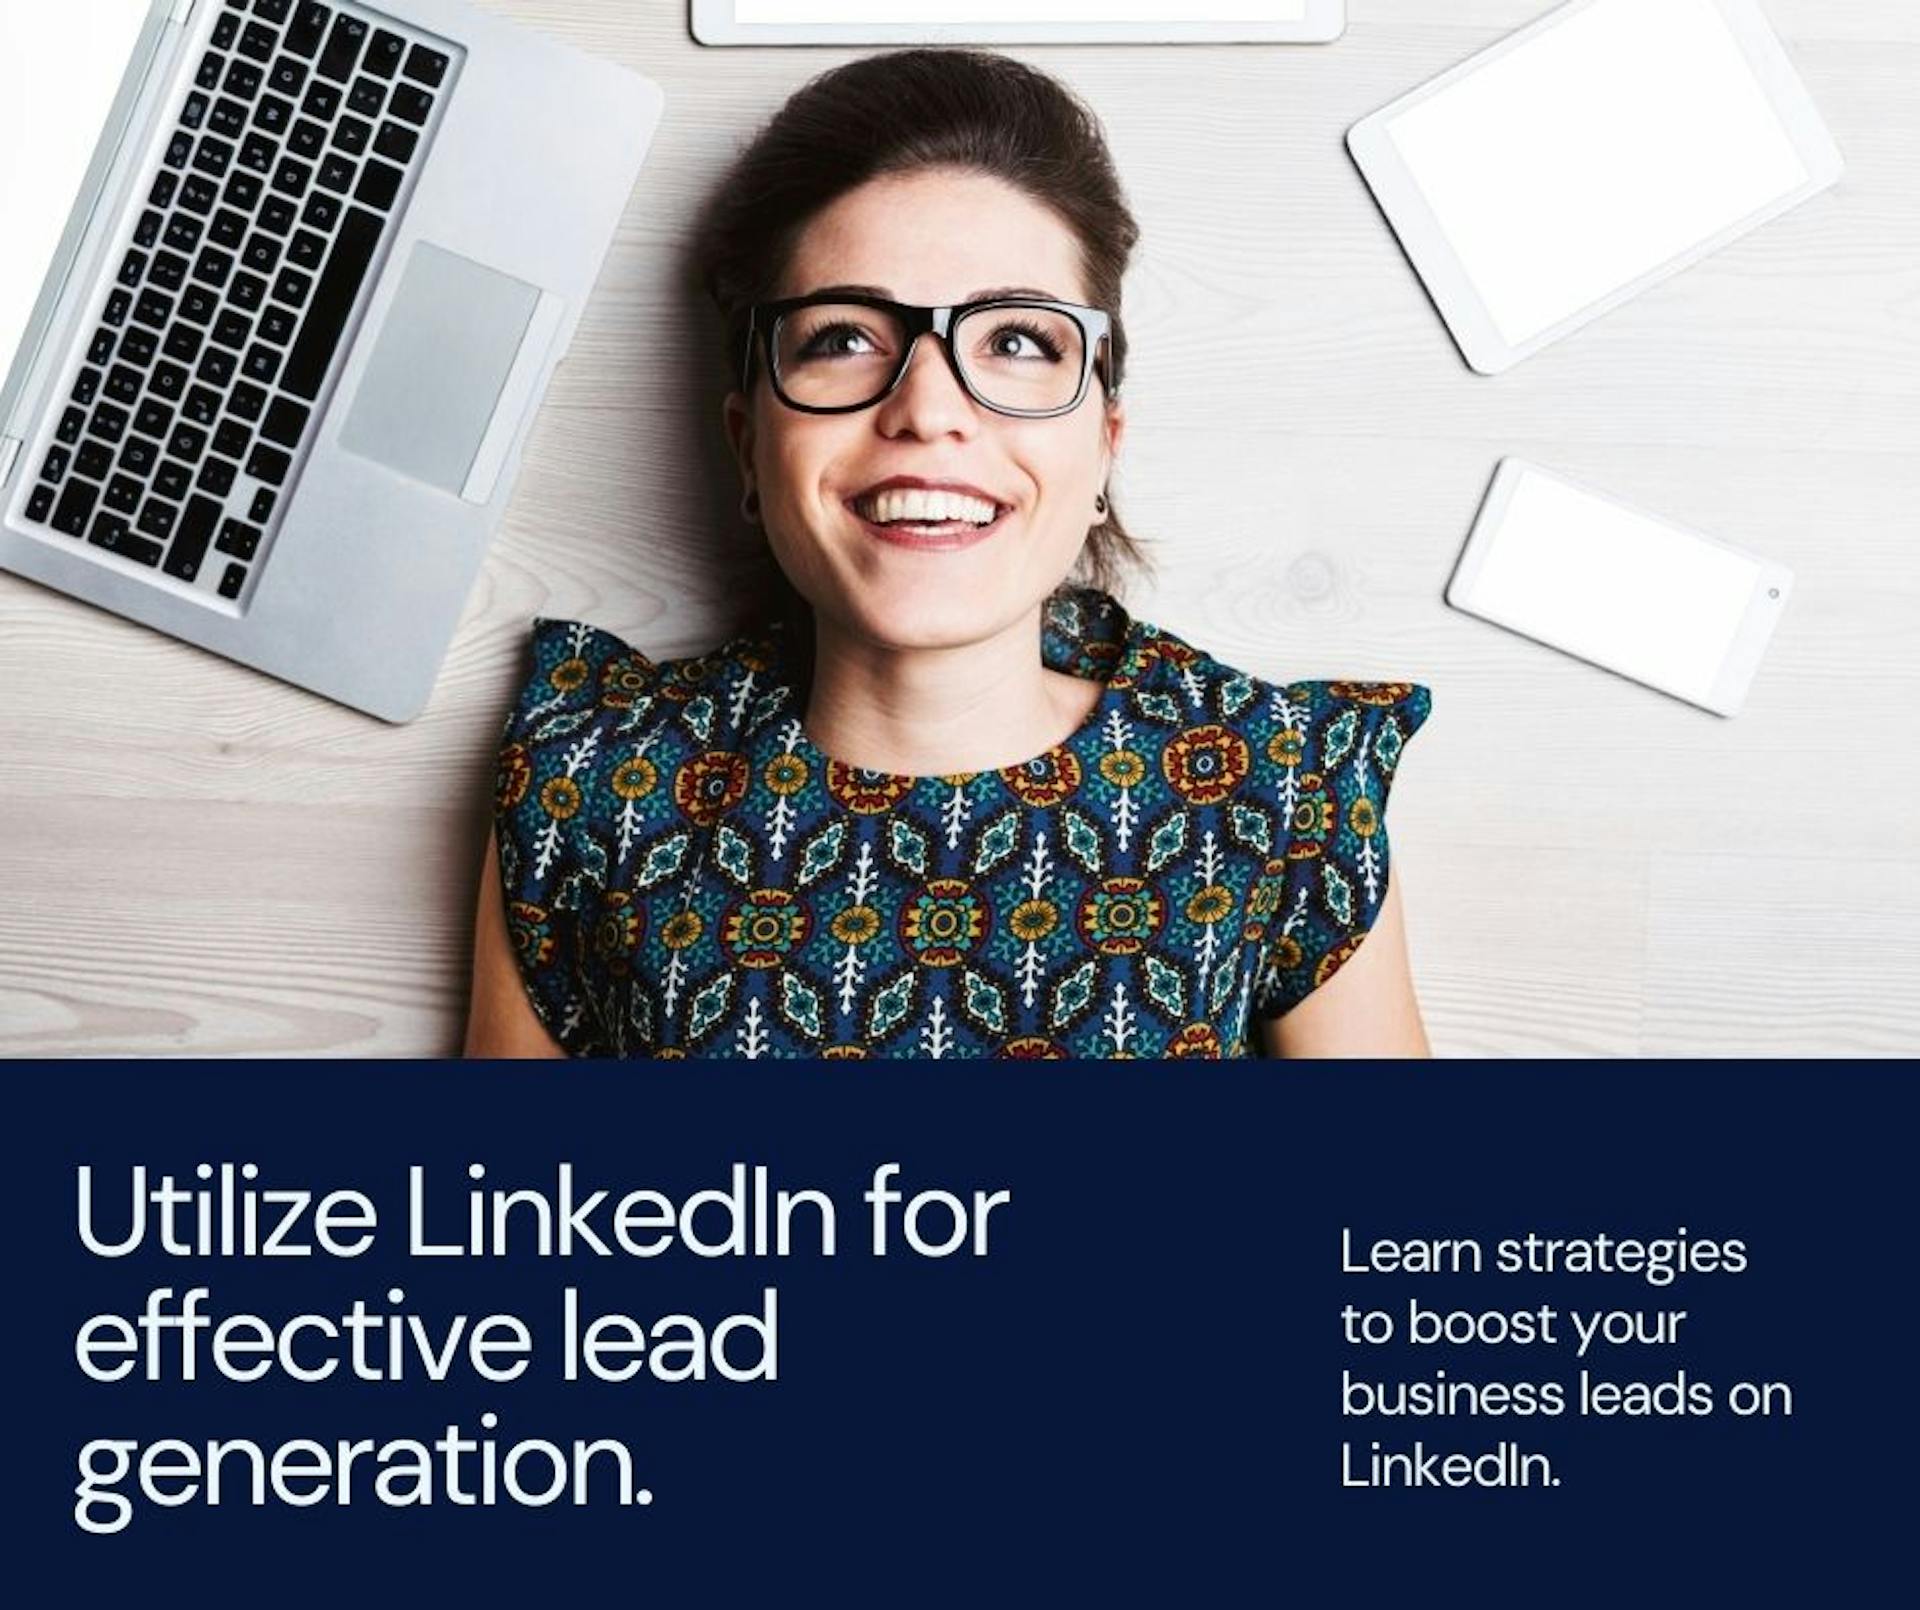 featured image - Как получить потенциальных клиентов из LinkedIn?